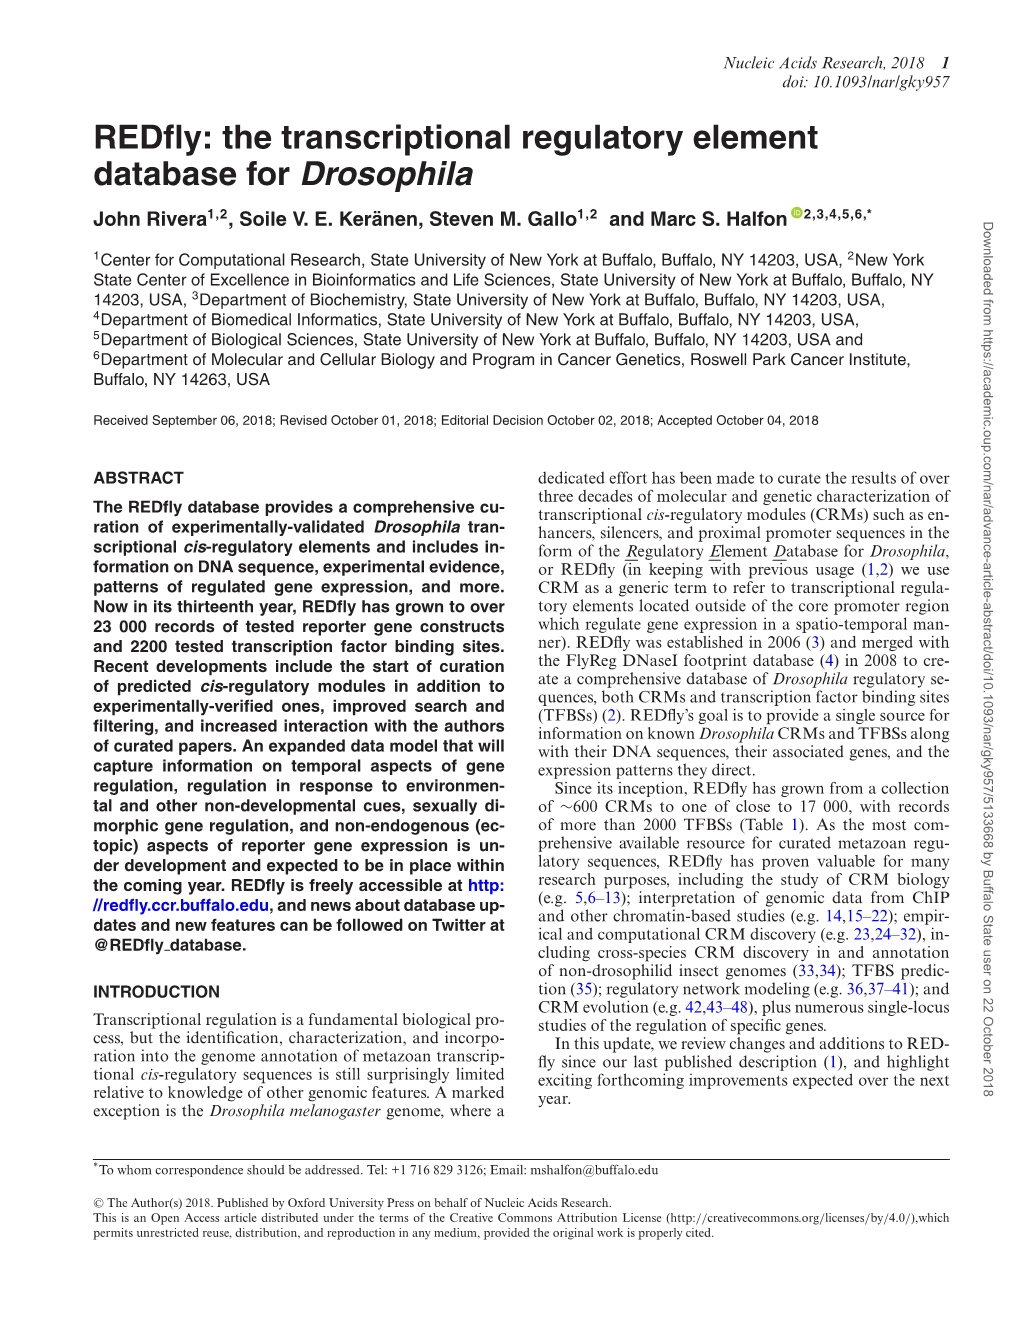 Redfly: the Transcriptional Regulatory Element Database for Drosophila